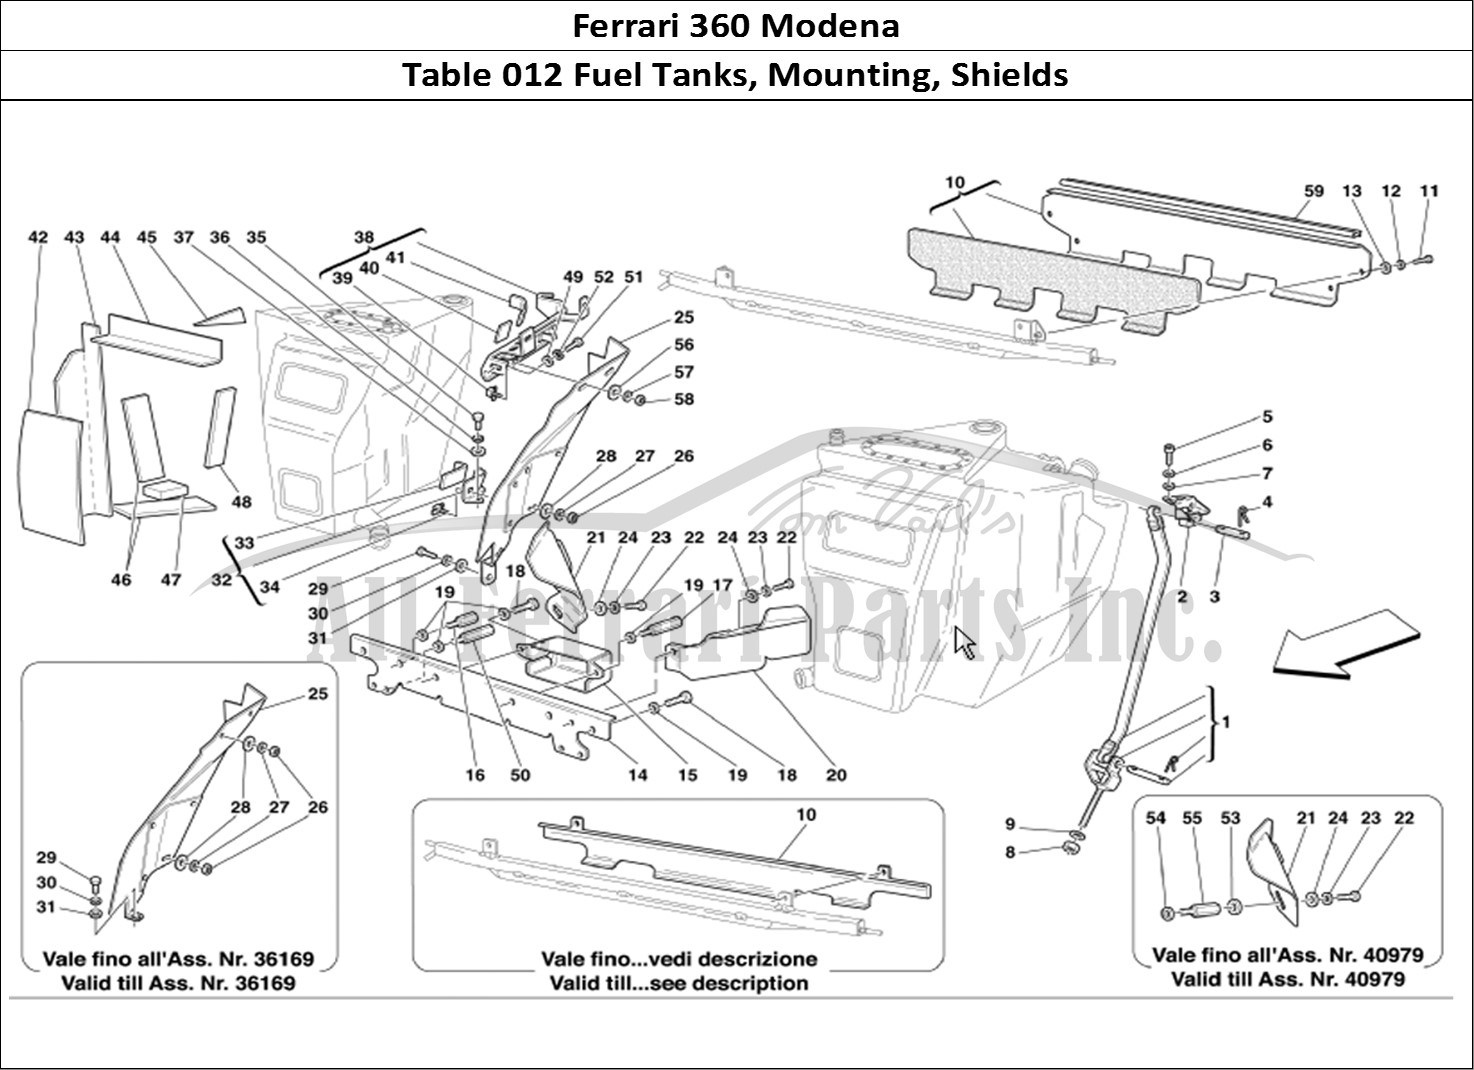 Ferrari Parts Ferrari 360 Modena Page 012 Fuel Tanks Fixing and Pro